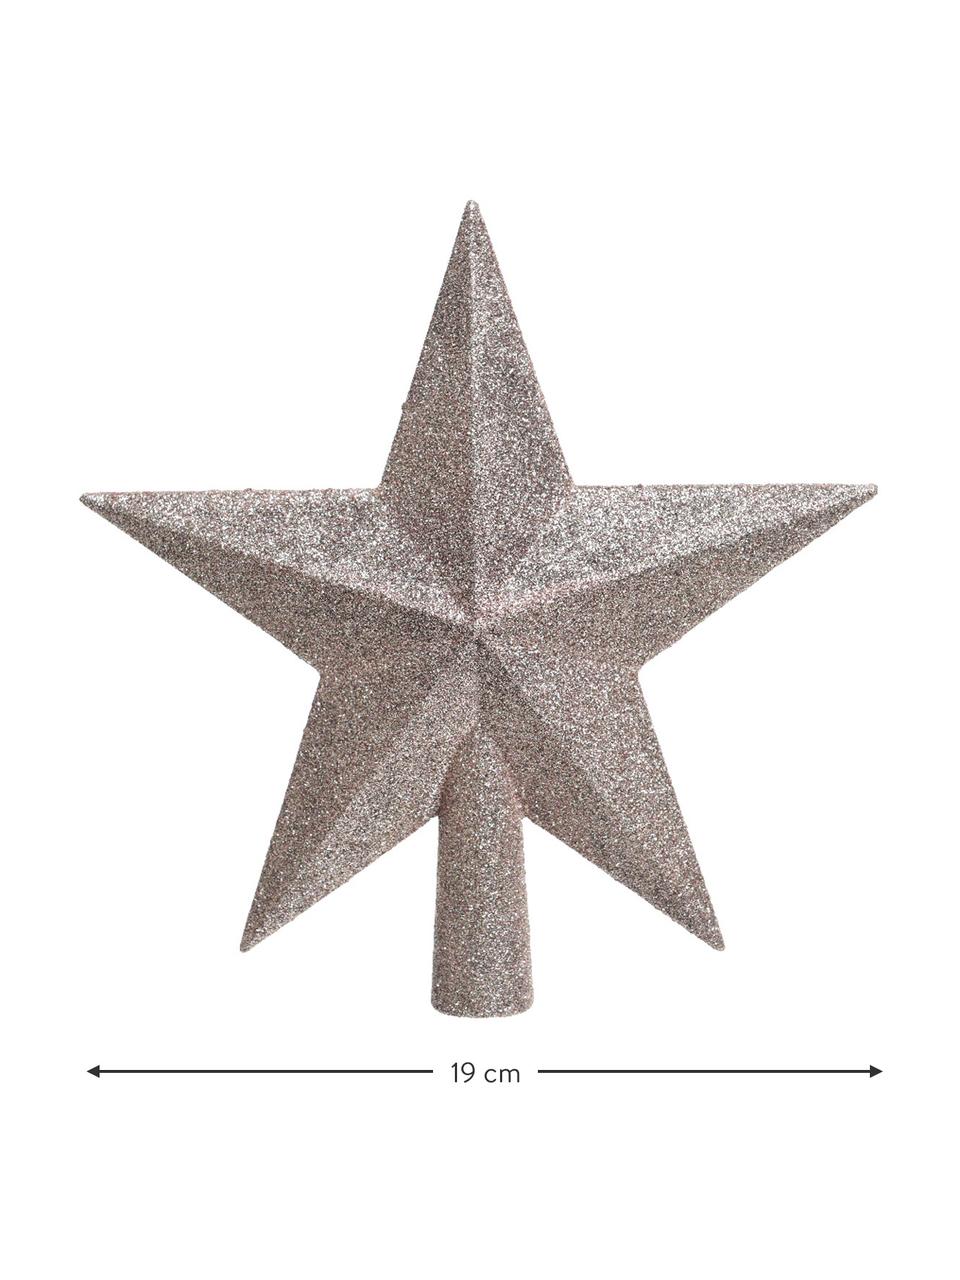 Nerozbitná vánoční špice  na stromeček Stern, Ø 19 cm, Umělá hmota, třpytky, Růžová, Š 19 cm, V 19 cm